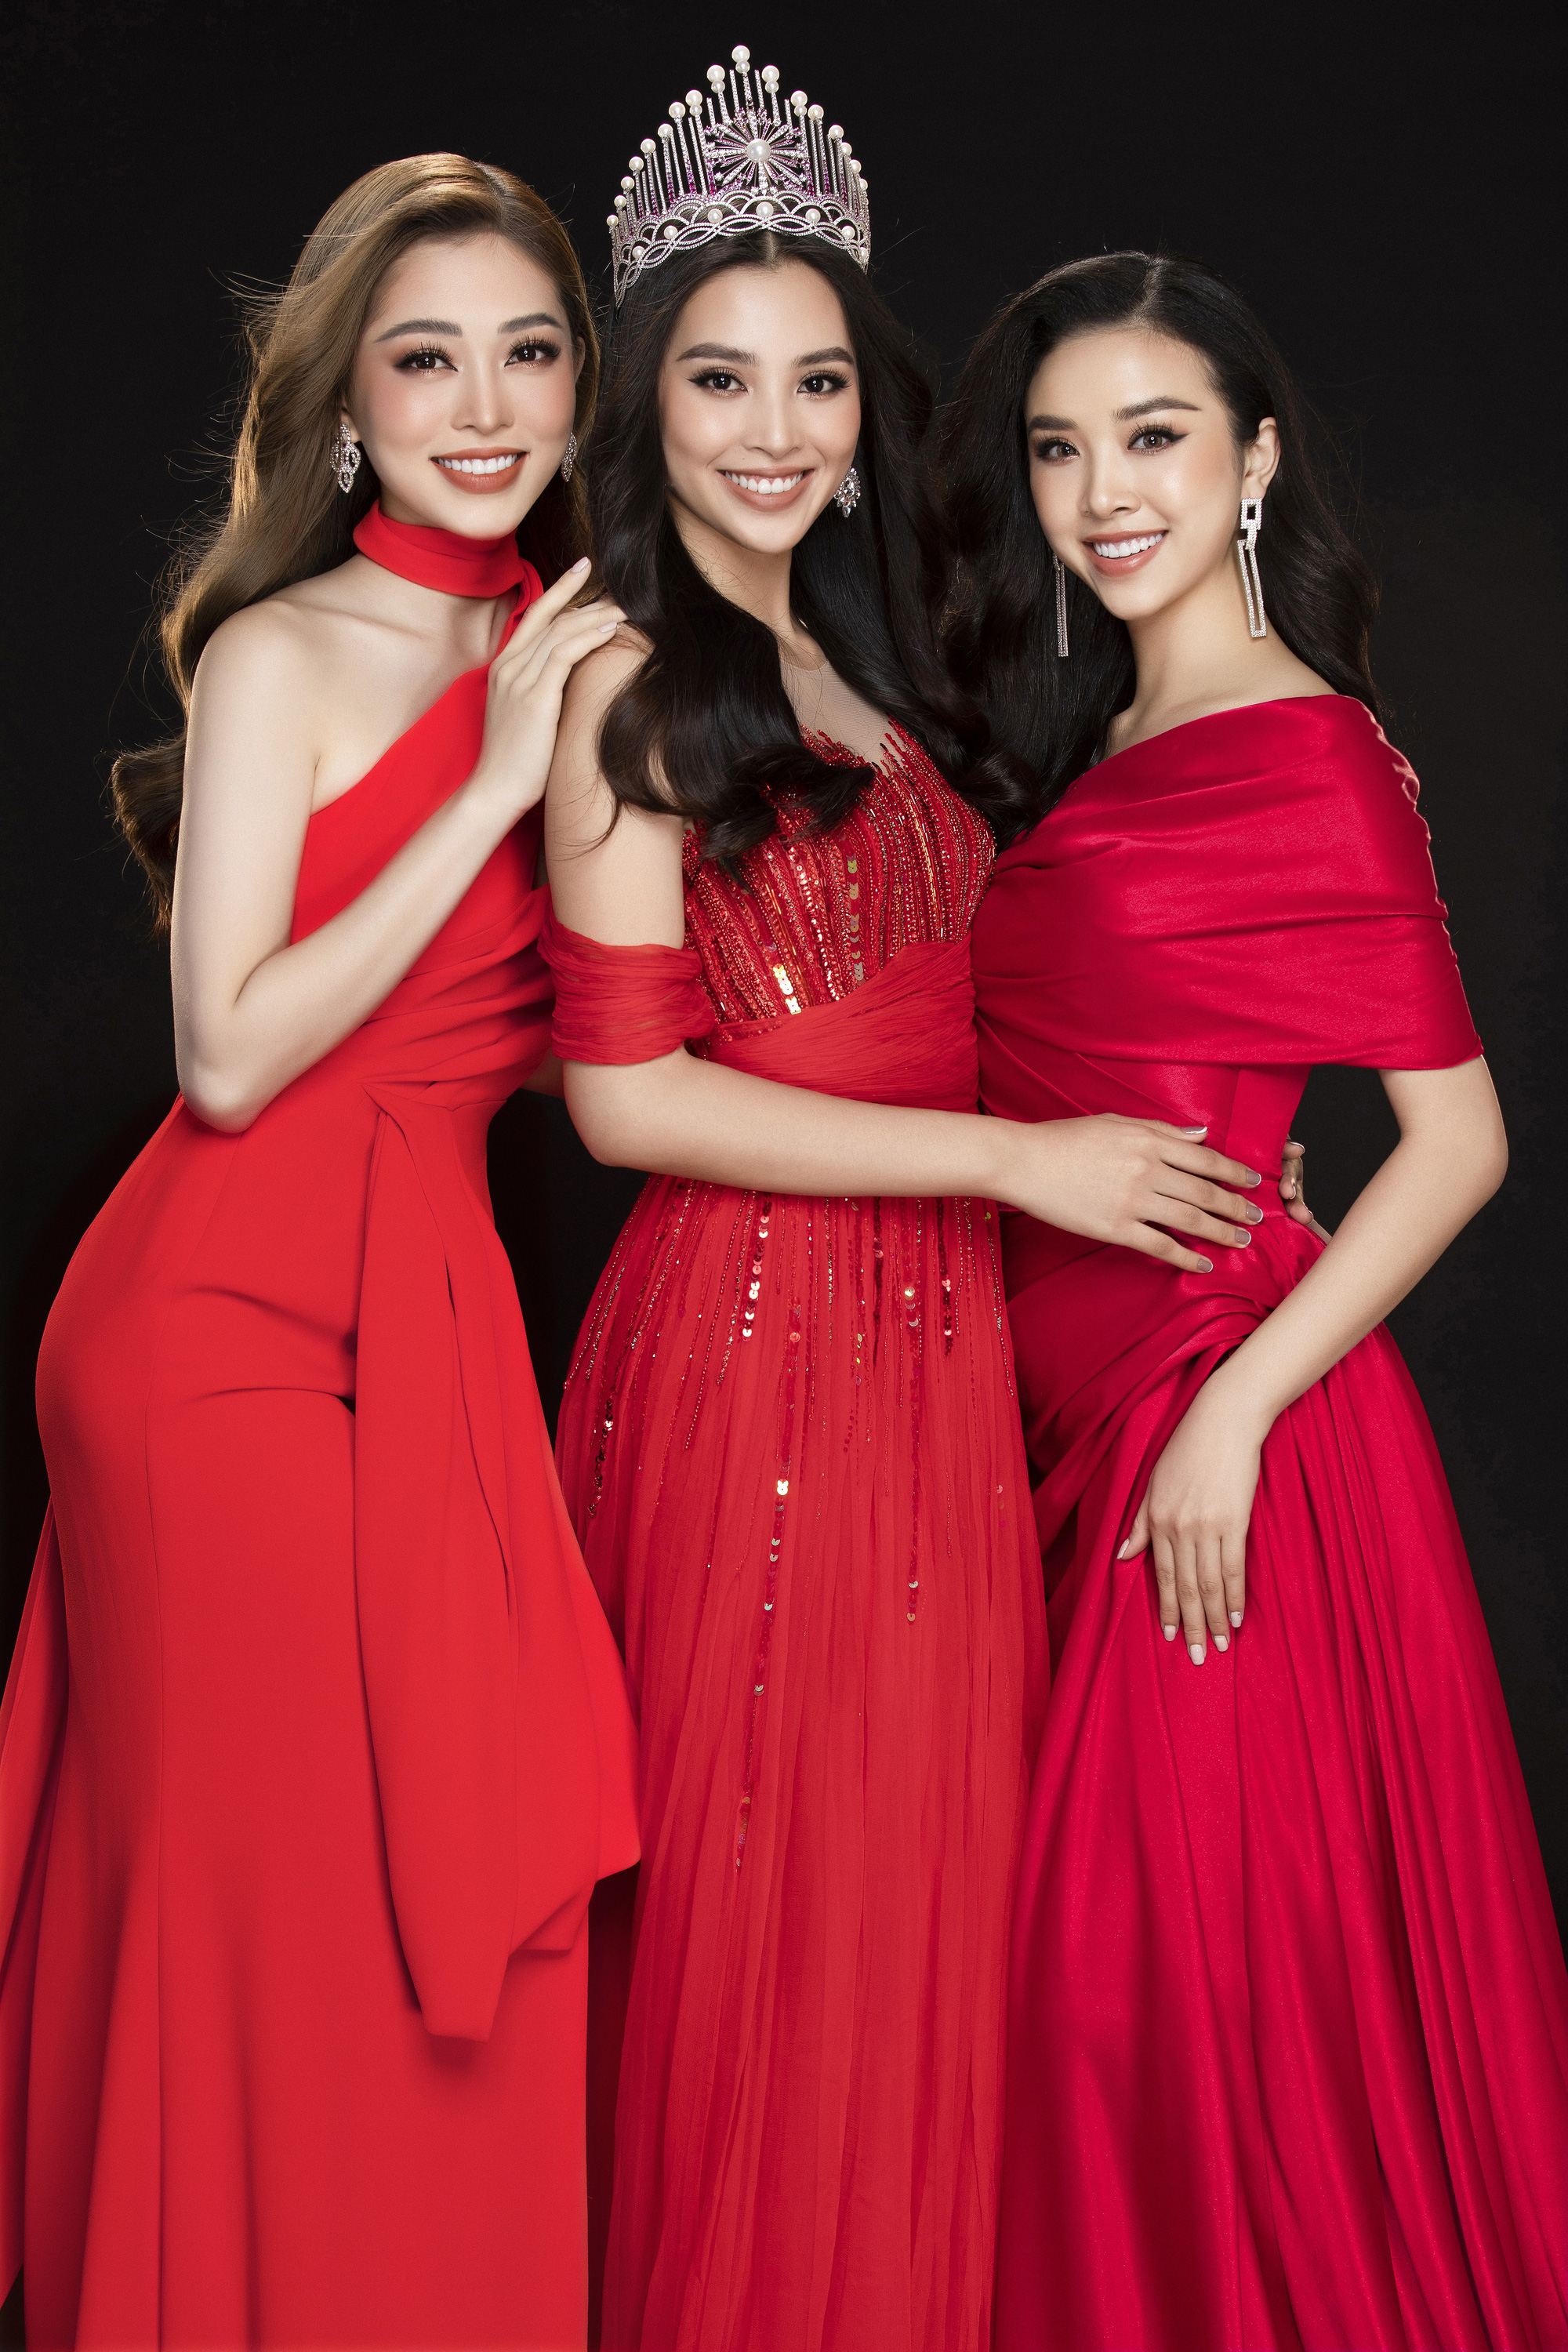 Hoa hậu Việt Nam 2020 chính thức khởi động, đi tìm chủ nhận mới của chiếc vương miện kế nhiệm Trần Tiểu Vy - Ảnh 2.